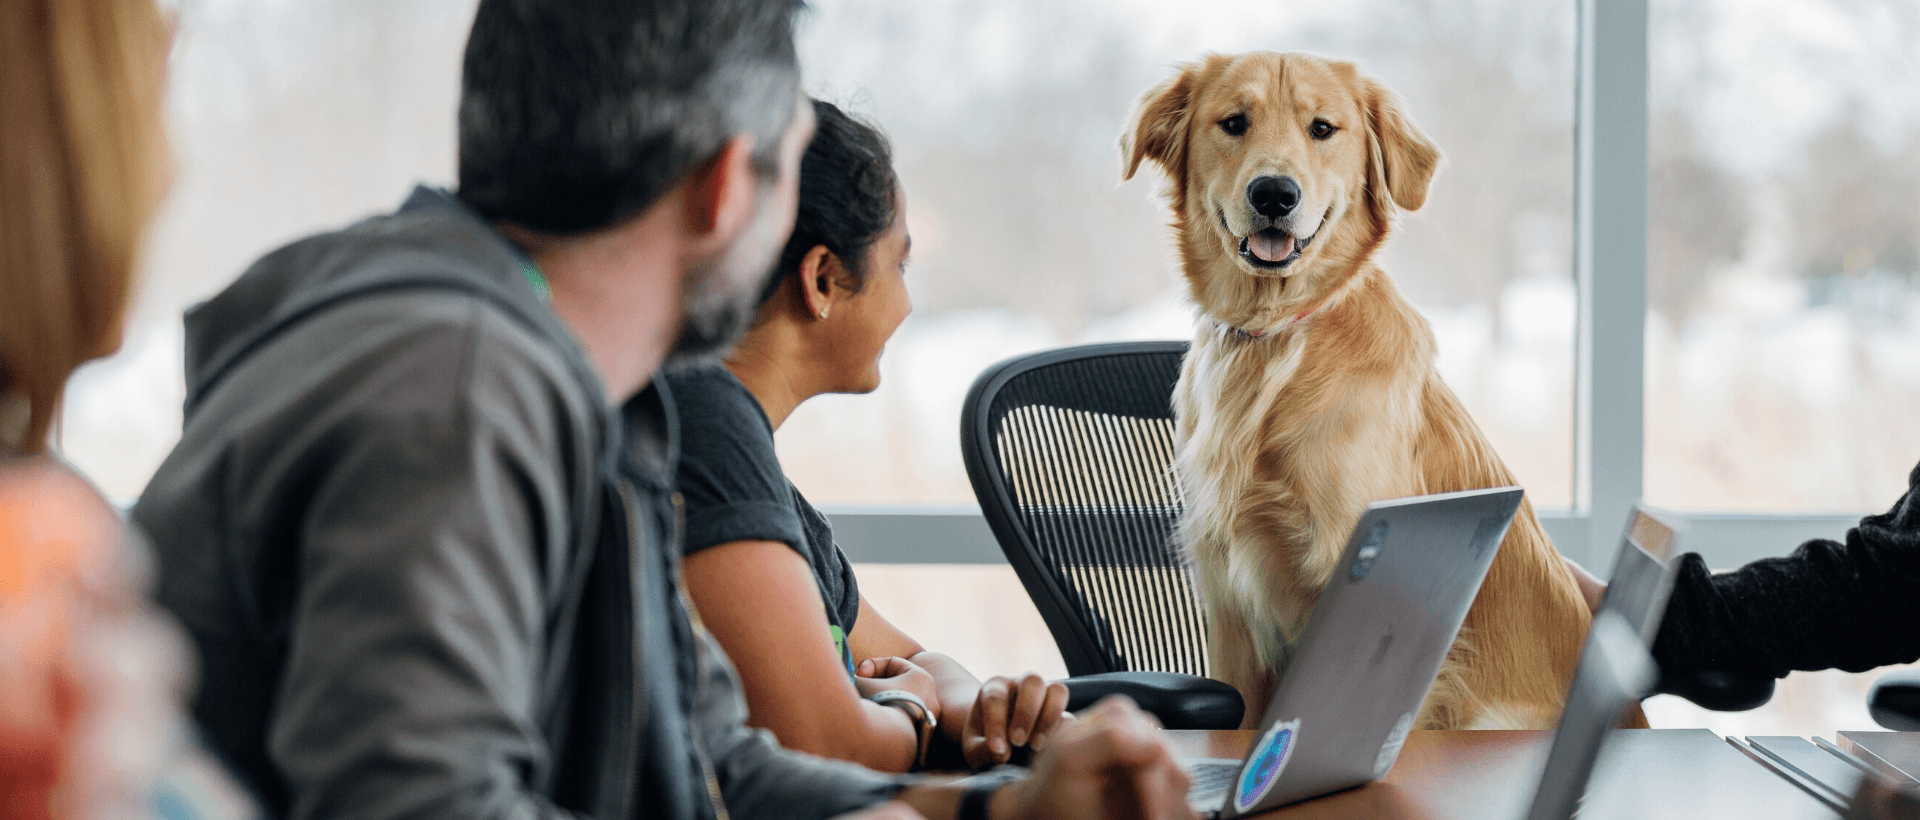 Personen interviewen Hund für Nutzerinsights bei User Research